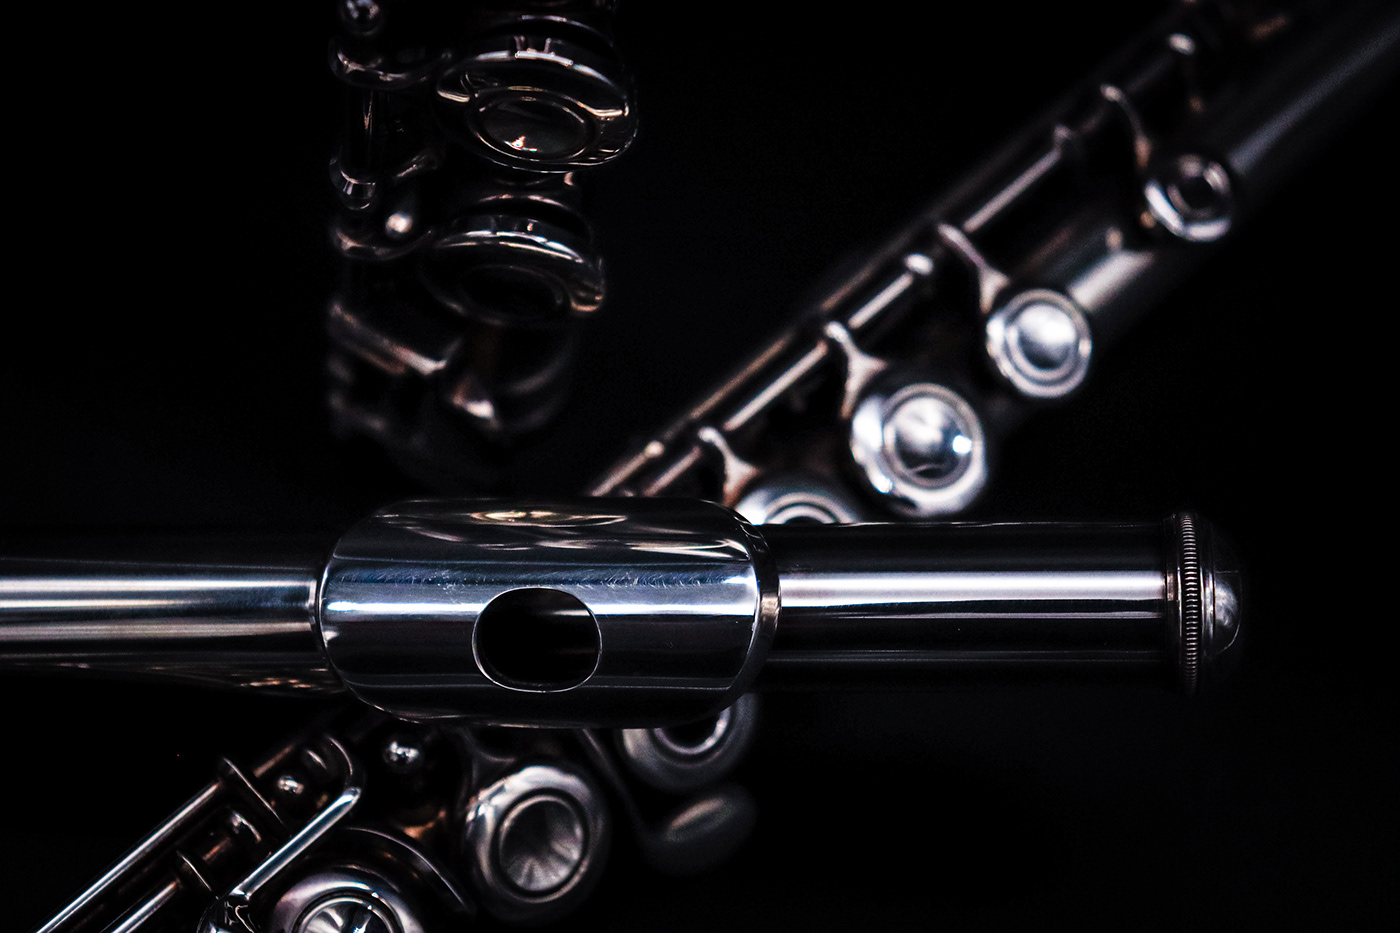 black background details flute Glockenspiel guitar instruments lute singing bowl Violin